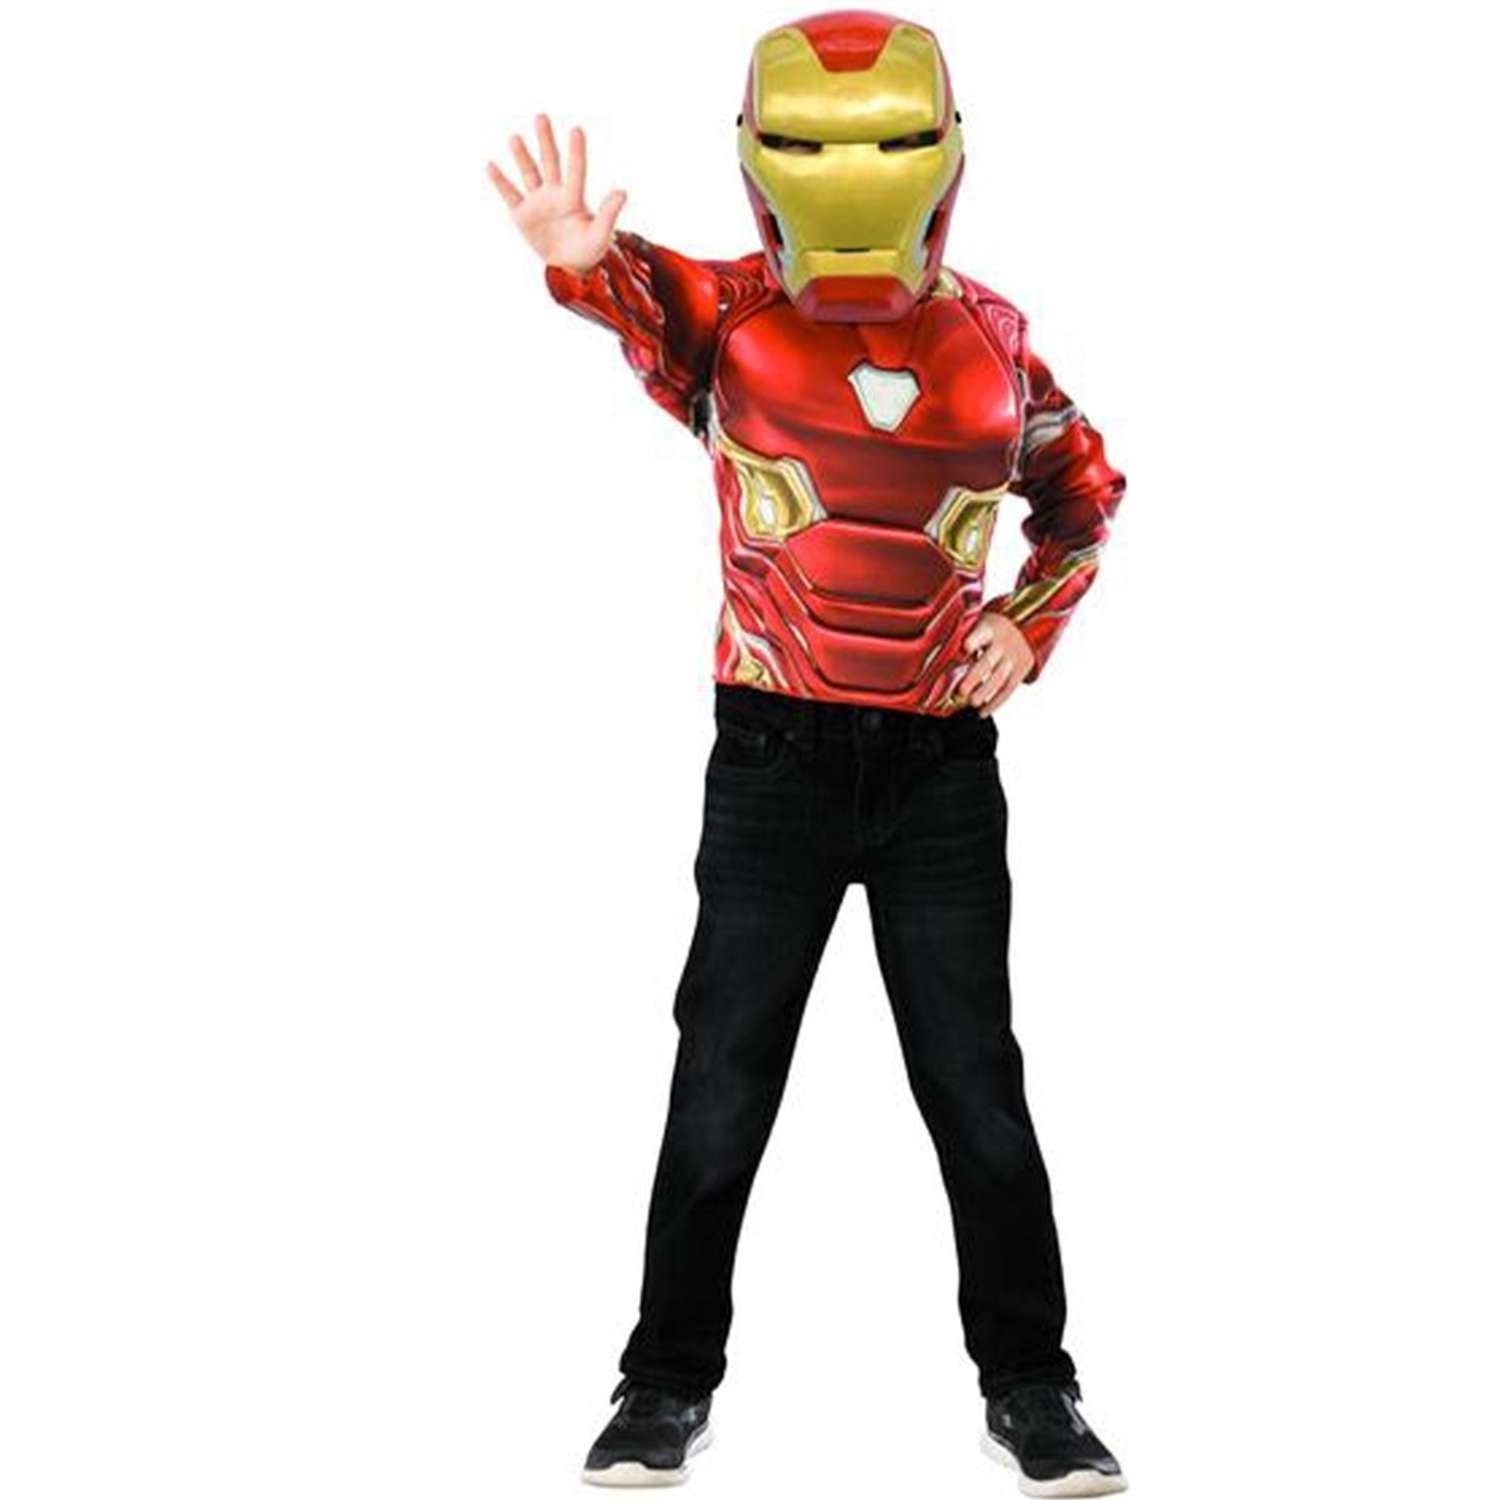 Детский костюм железного человека. Костюм маска. Rubies костюмы железного человека. Карнавальный костюм Rubie's Железный человек Deluxe.